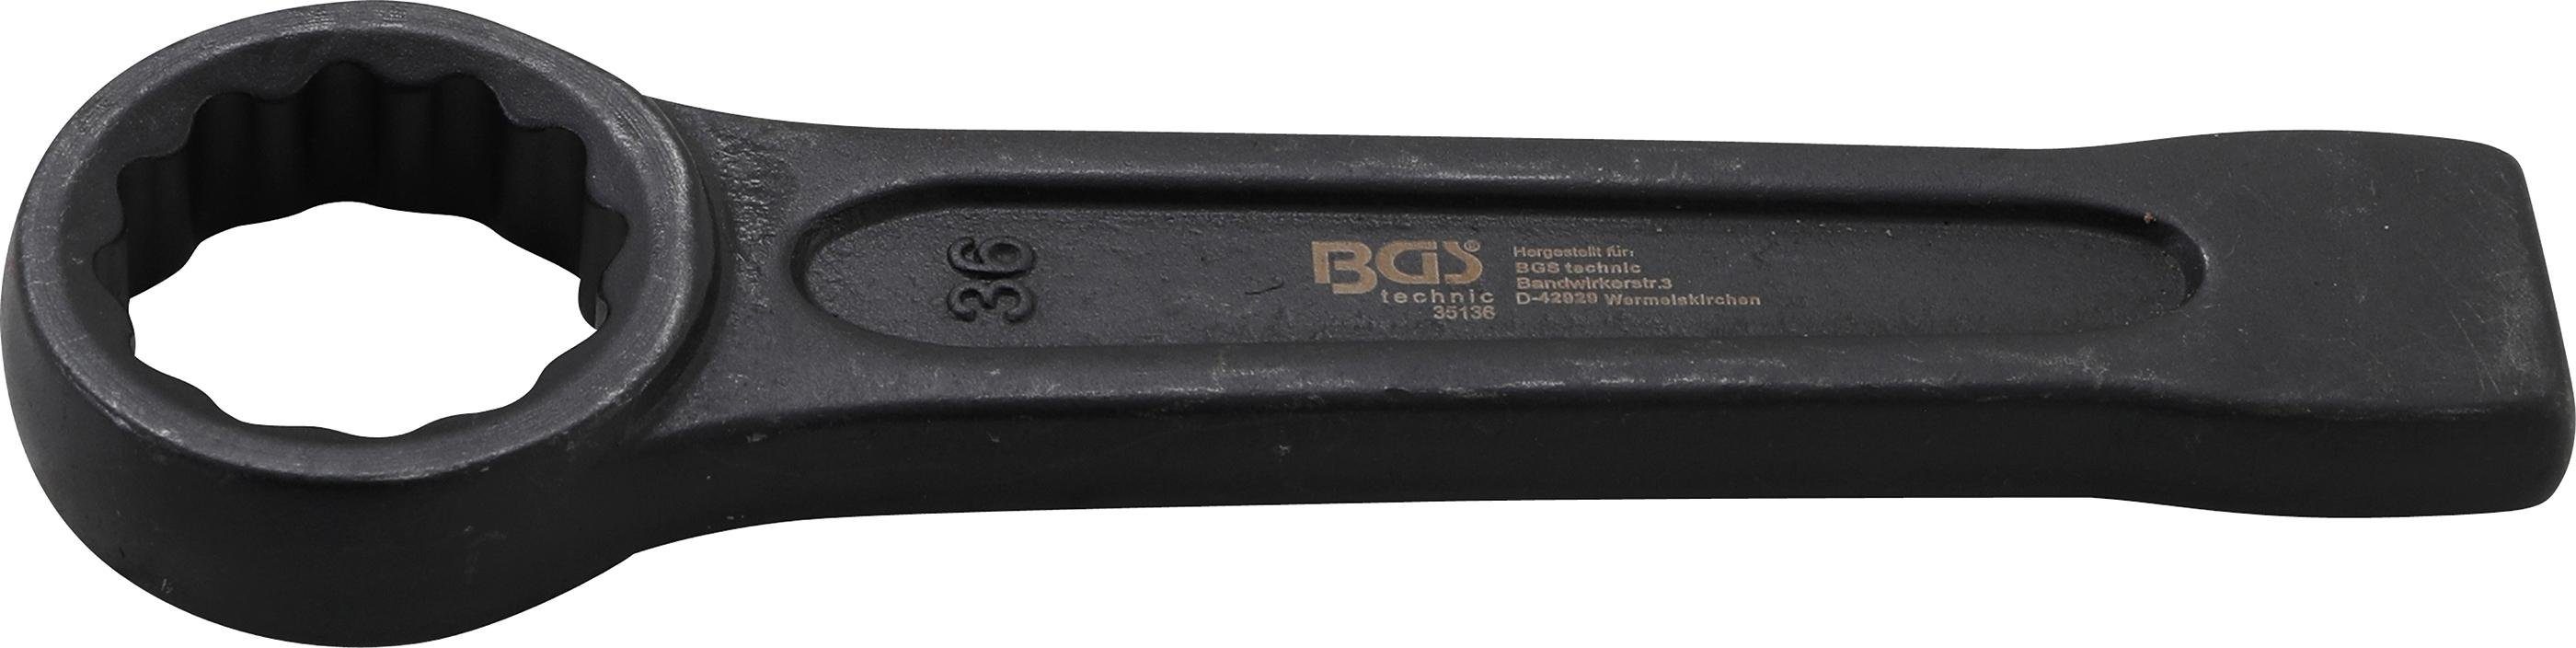 BGS technic Ringschlüssel Schlag-Ringschlüssel, SW 36 mm